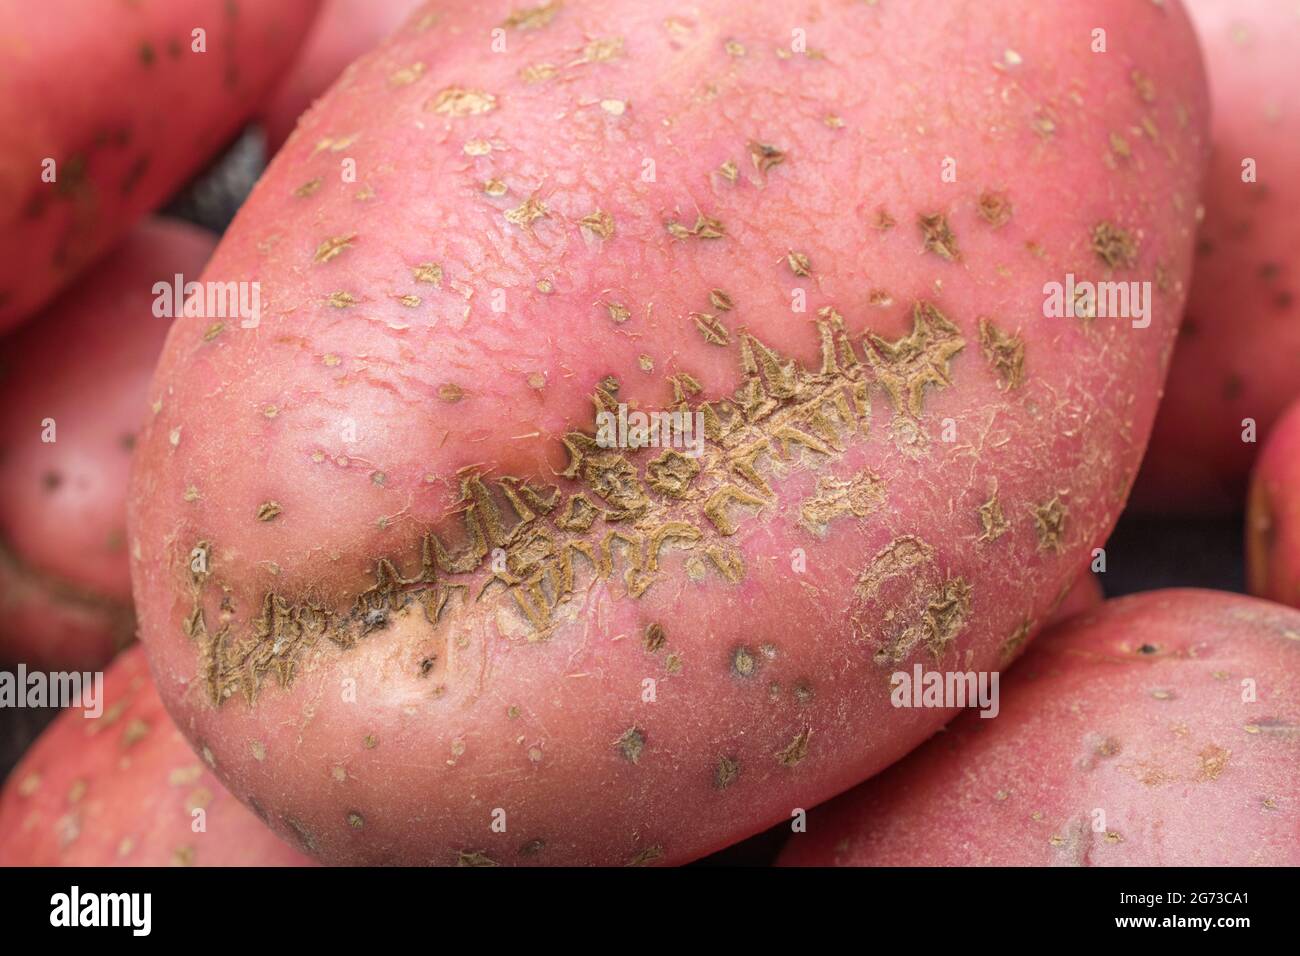 Rote/rosarote Kartoffel, die in Großbritannien angebaut wird. Die Kartoffeln weisen eine gewisse Krankheit auf [was ein gewöhnlicher Schorf oder vielleicht ein pulverförmiger Schorf sein kann]. Stockfoto